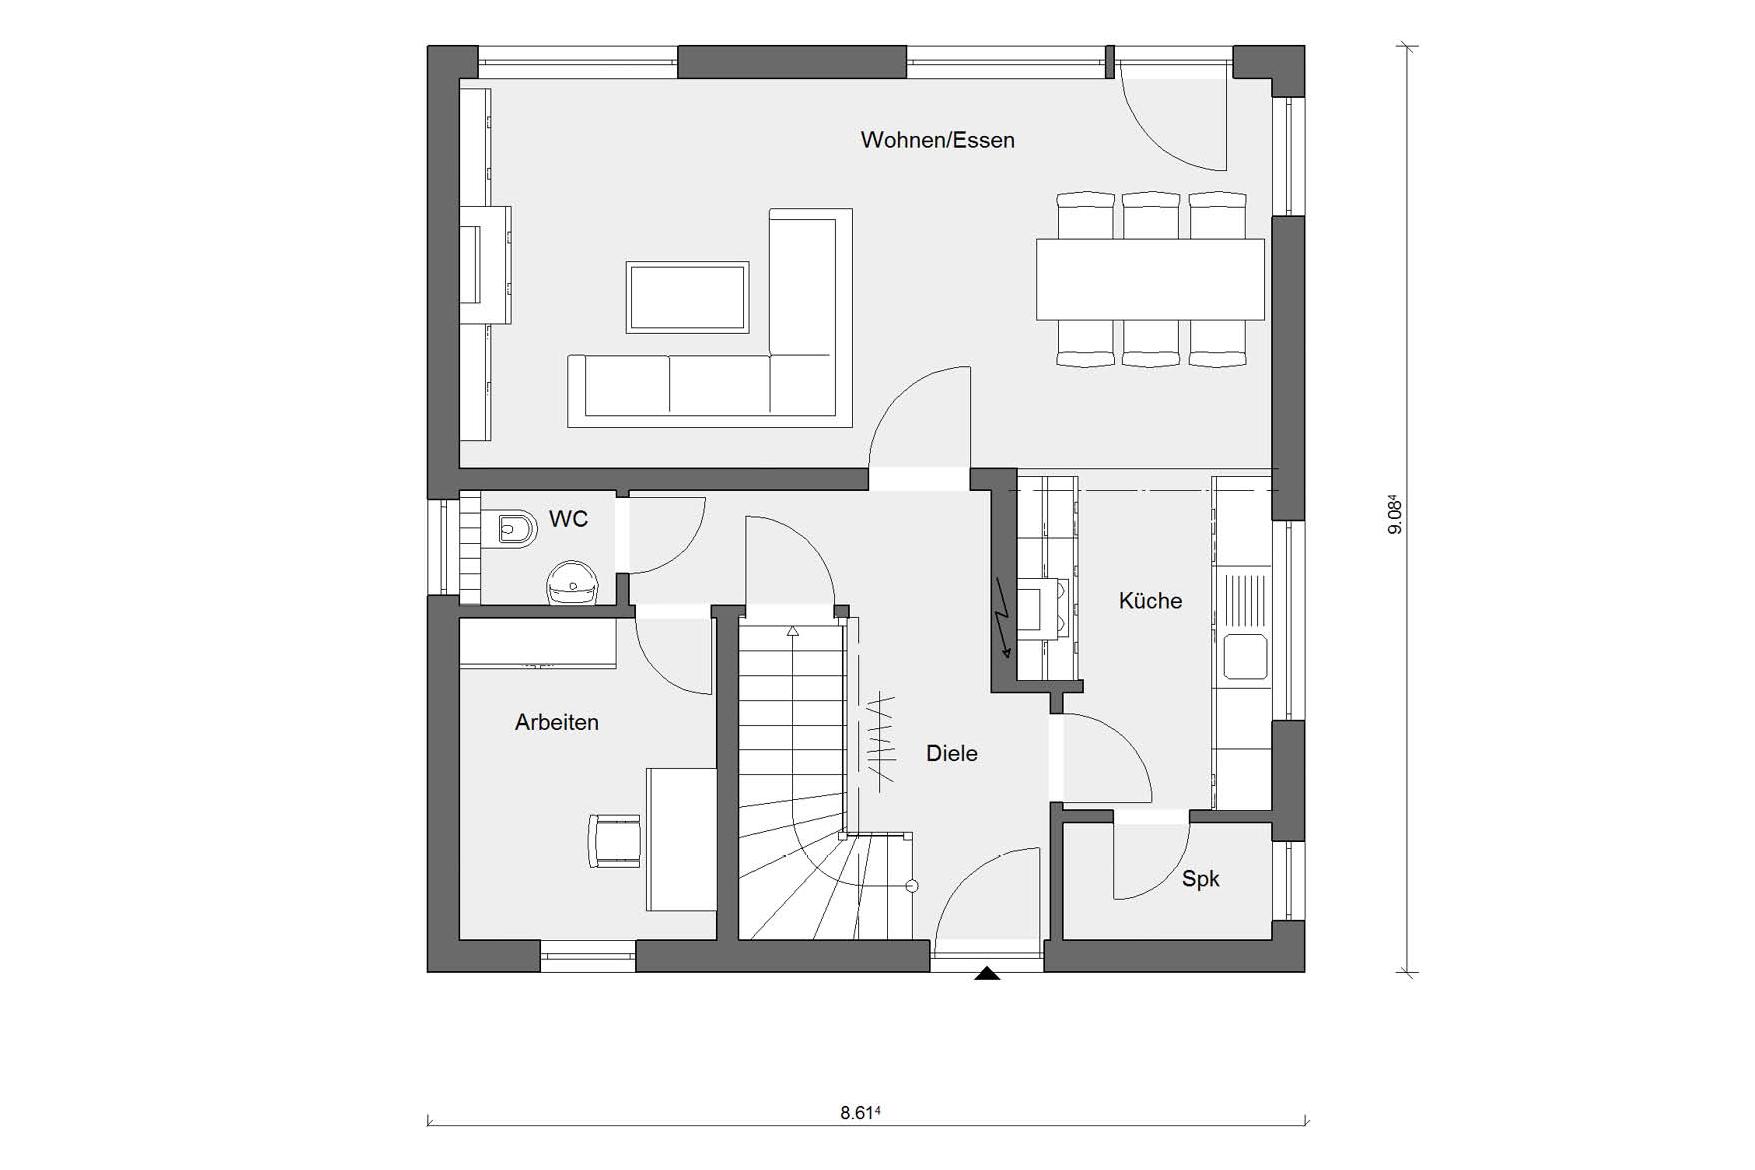 Plan d'étage rez-de-chaussée E 15-127.9 maison individuelle moderne